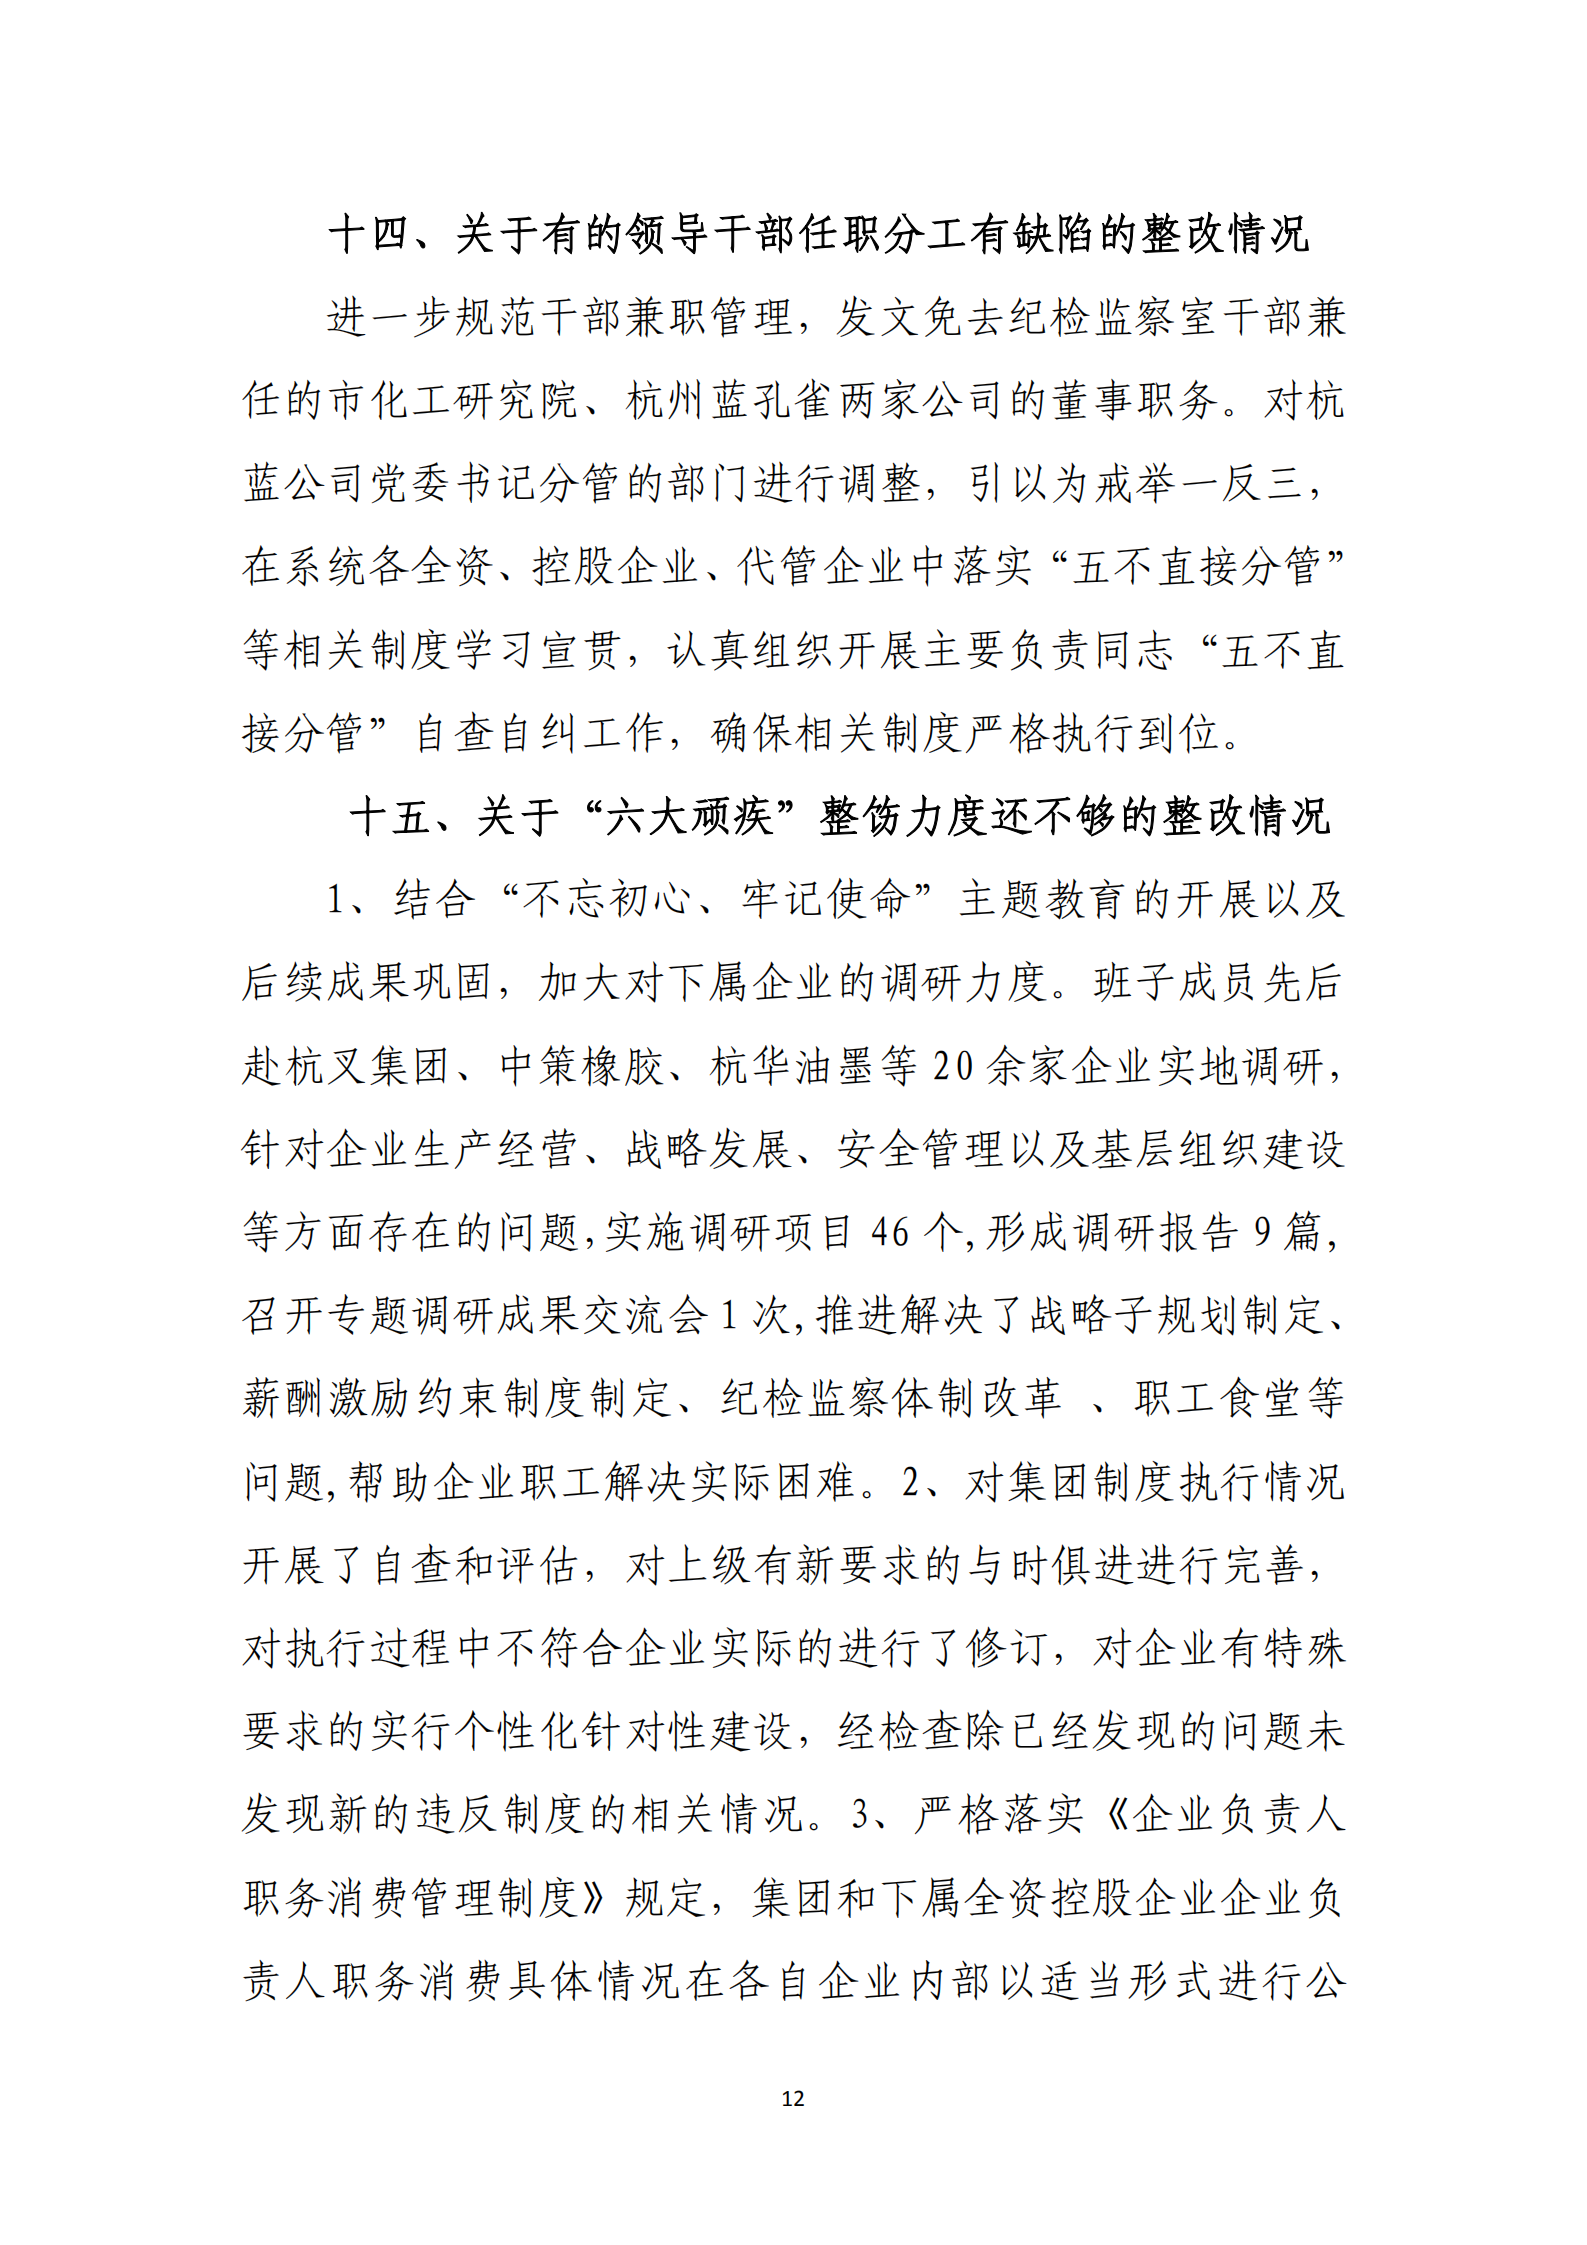 杭实集团党委关于巡察整改情况的通报_11.png